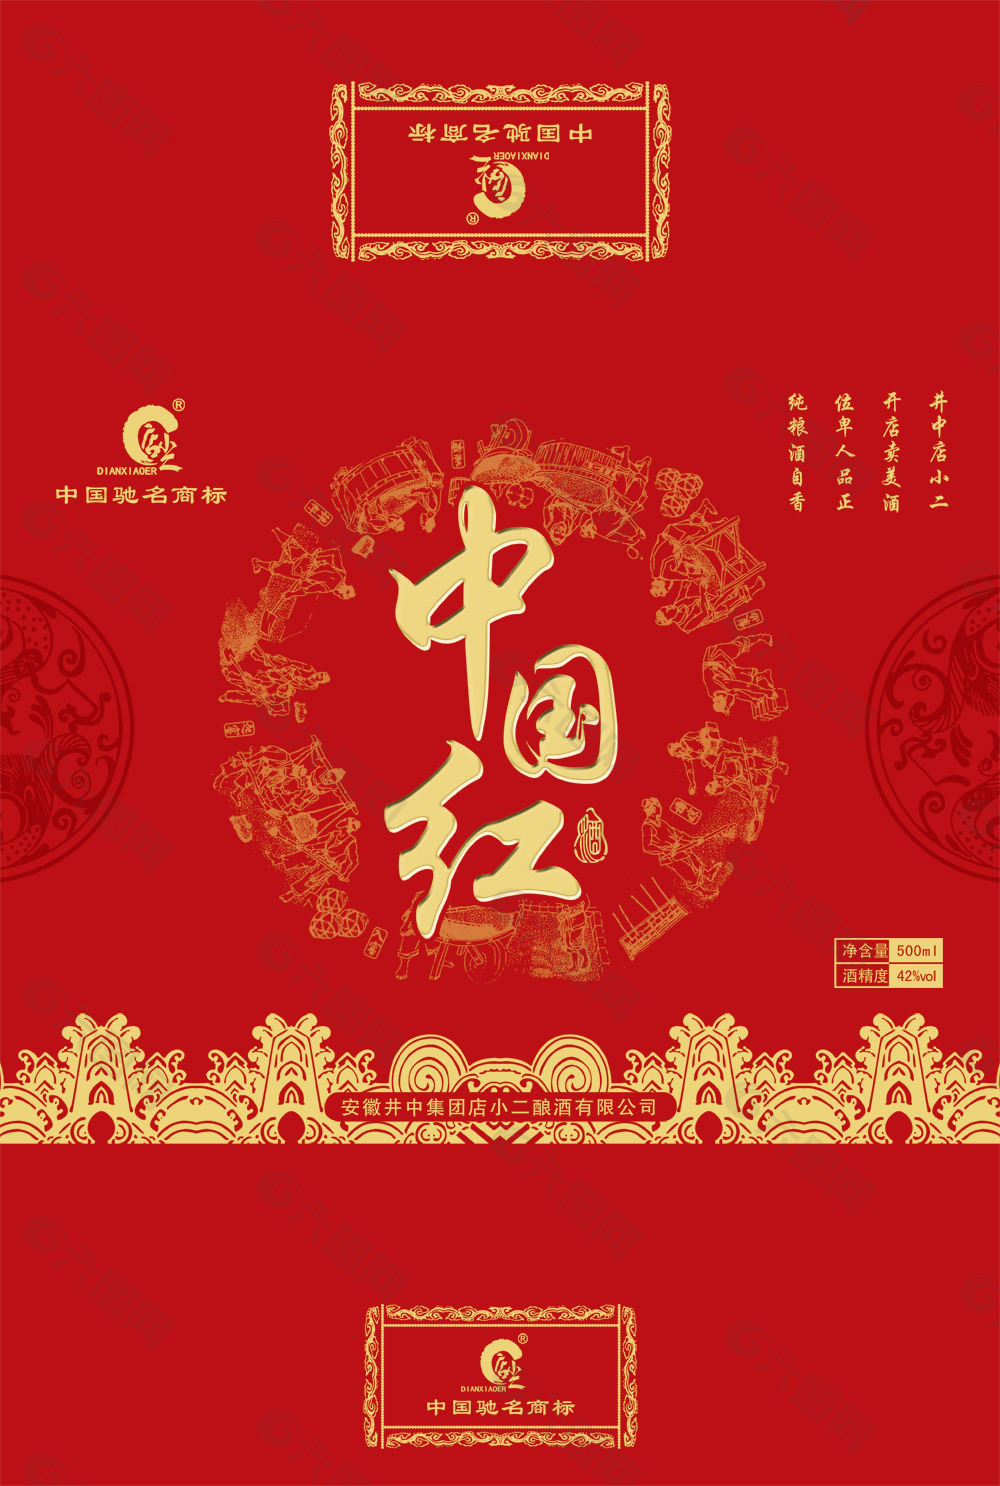 中国红白酒包装